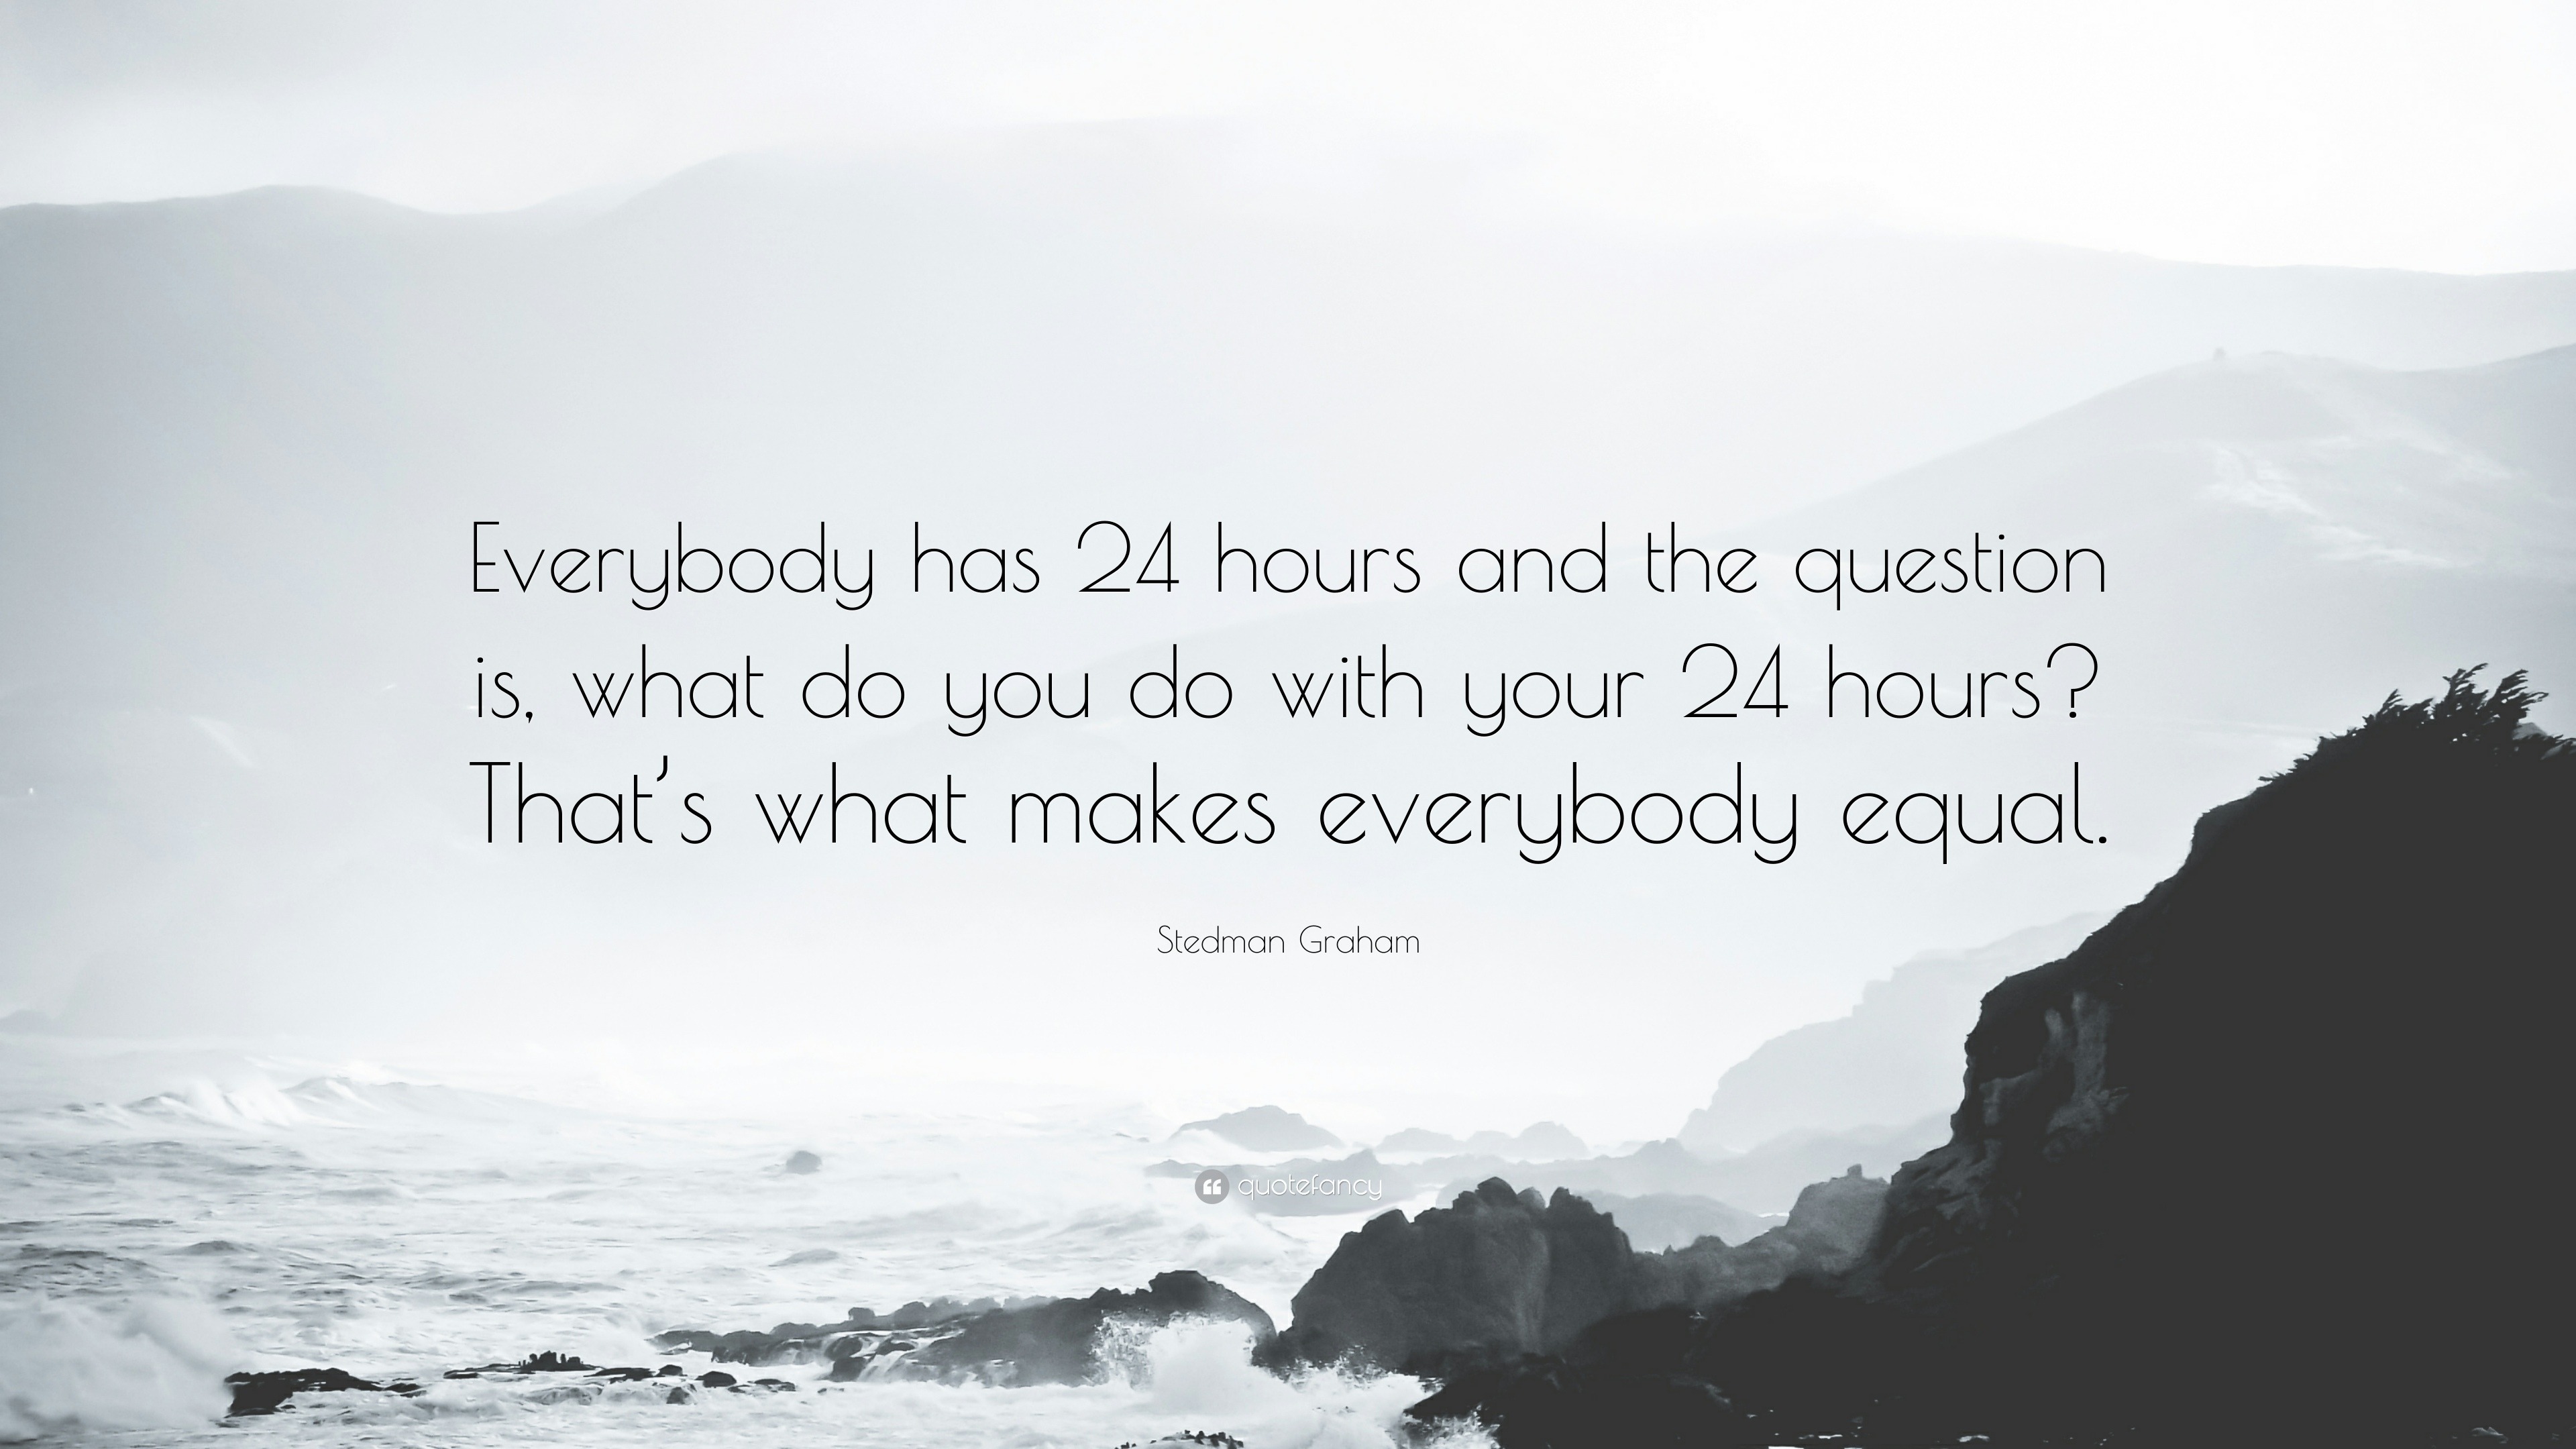 verzoek Verdienen Gesprekelijk Stedman Graham Quote: “Everybody has 24 hours and the question is, what do  you do with